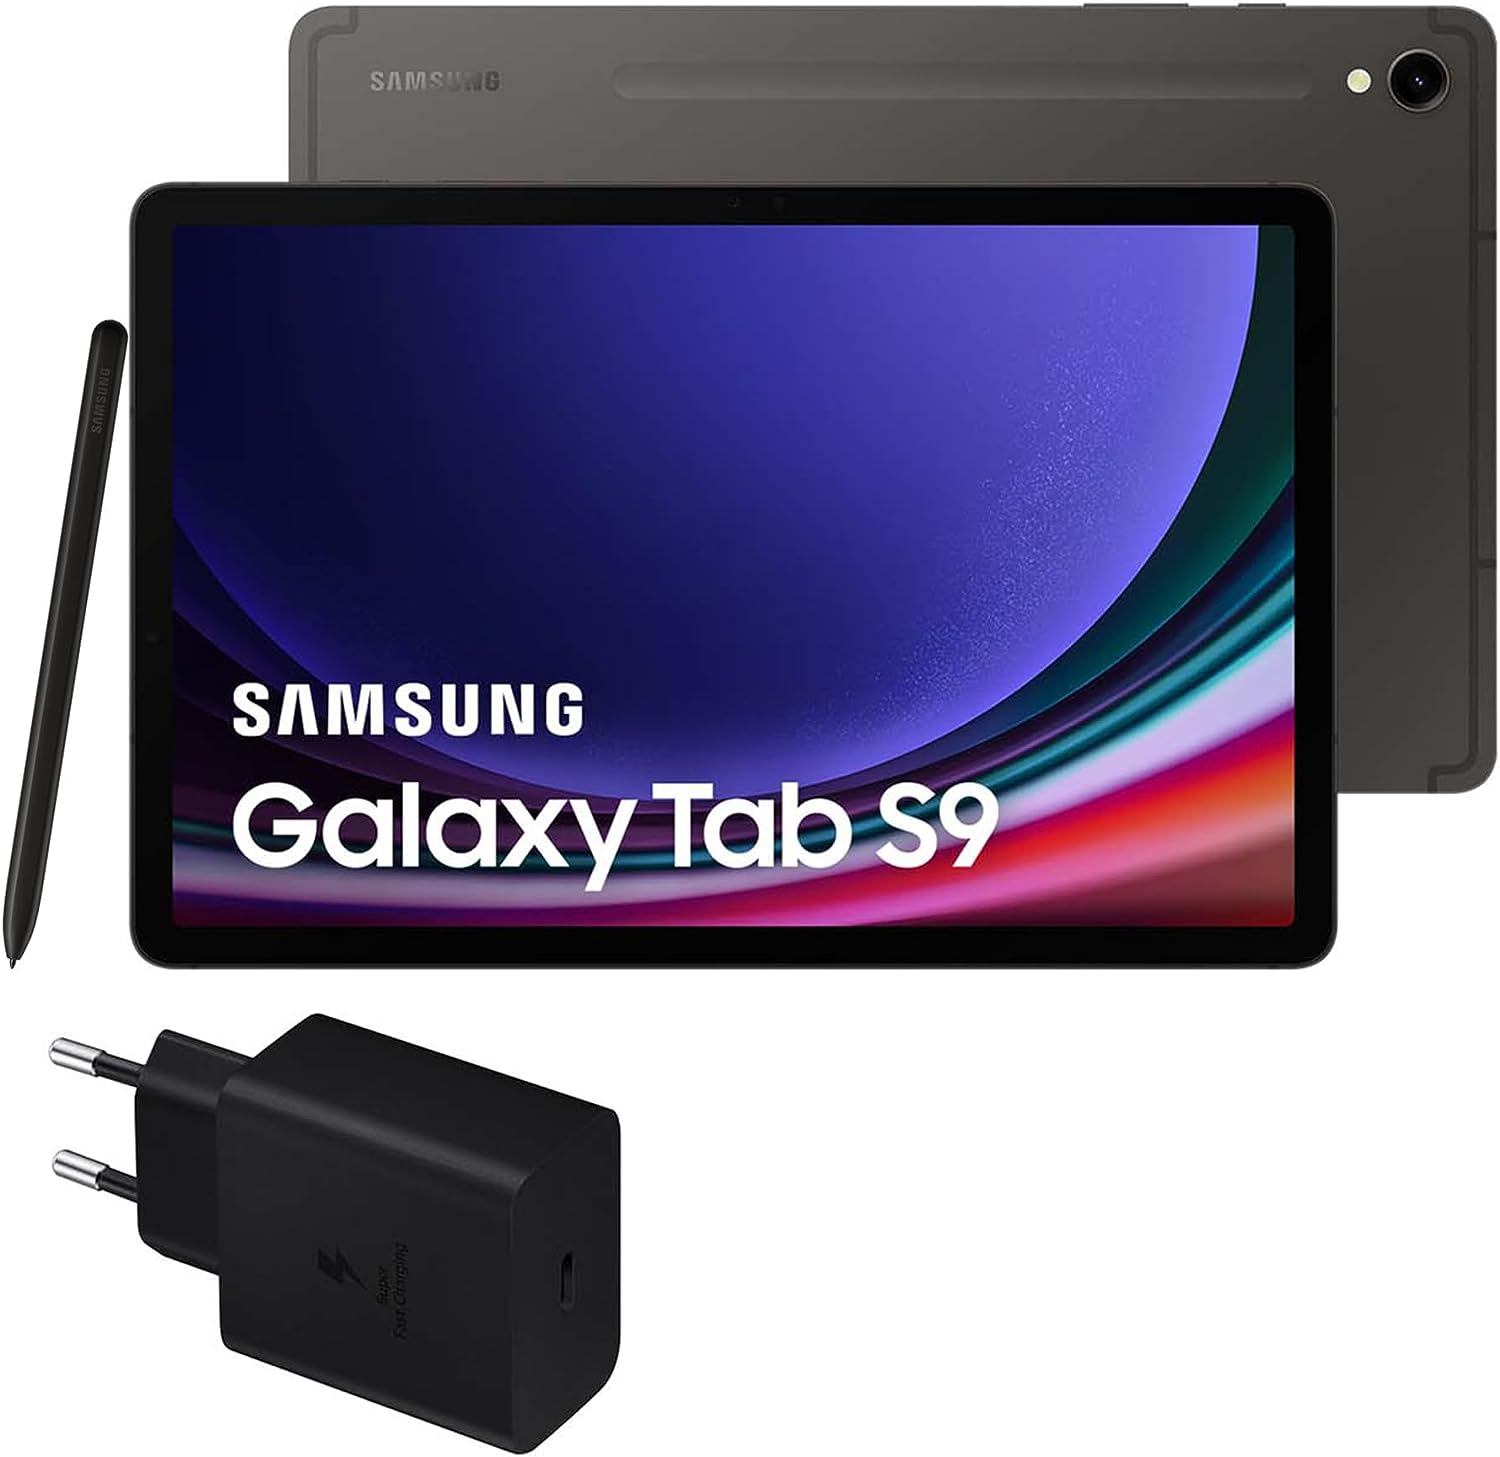 Samsung Galaxy Tab S9 vs. Samsung Galaxy Tab S9+ vs. Samsung Galaxy Tab S9 Ultra